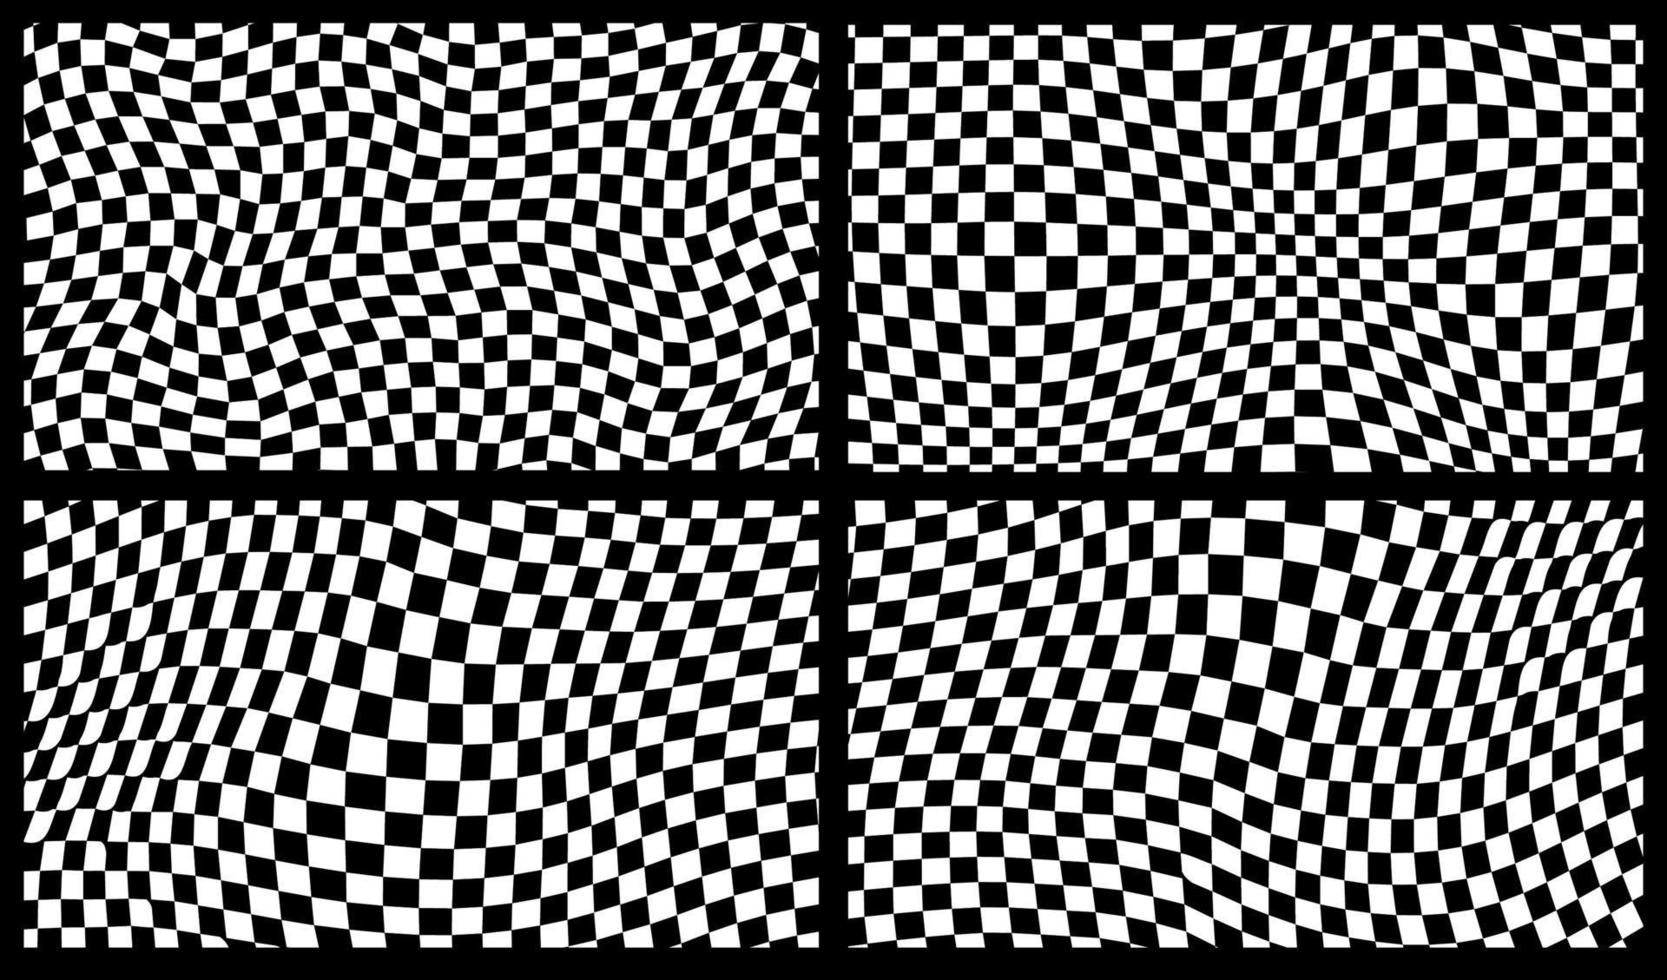 fundo retrô groovy no estilo de pano de fundo quadriculado psicodélico. um tabuleiro de xadrez em um design abstrato minimalista com uma vibe estética dos anos 60 e 70. estilo hippie y2k. ilustração vetorial de impressão funky vetor